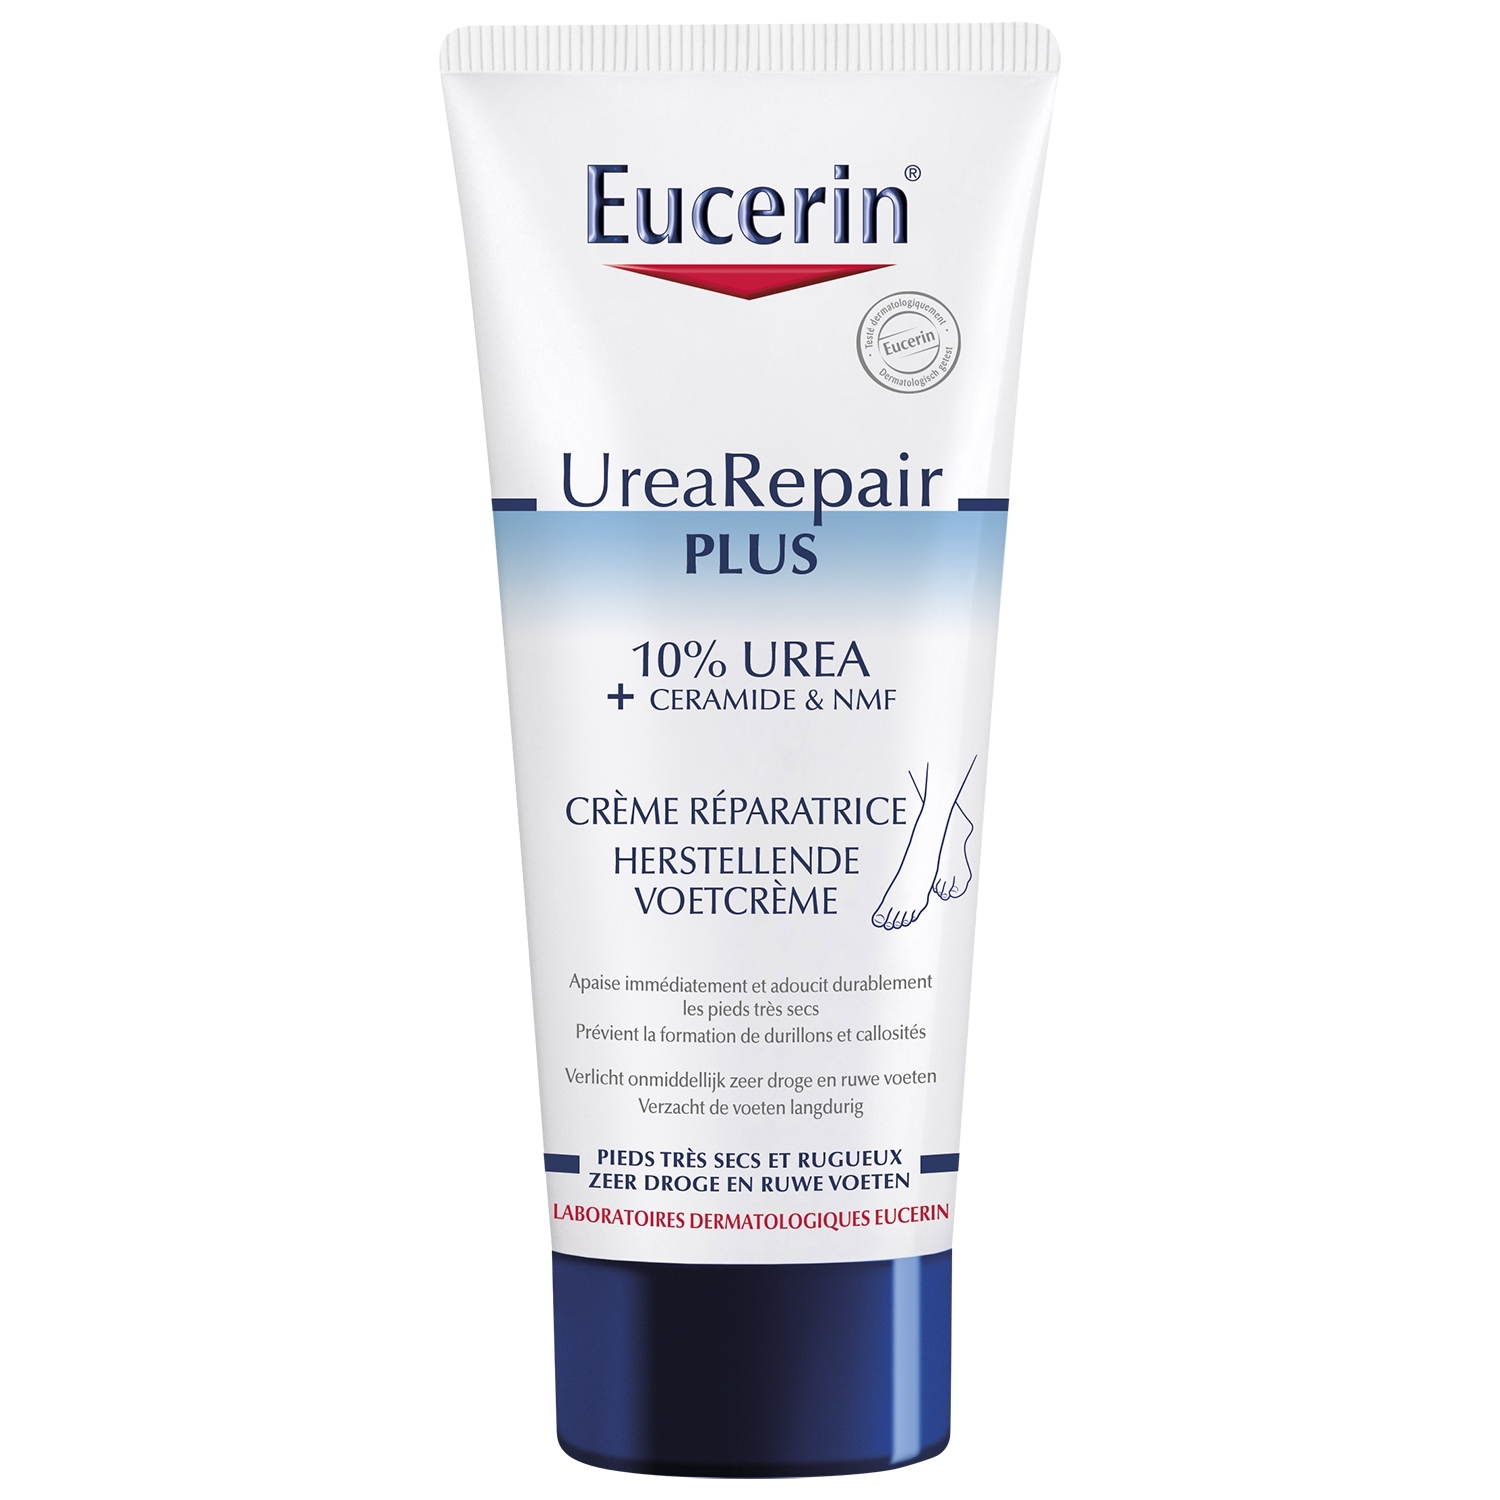 Eucerin Urearepair plus crème pour les pied réparatrice - 10 % Urée - 100 ml